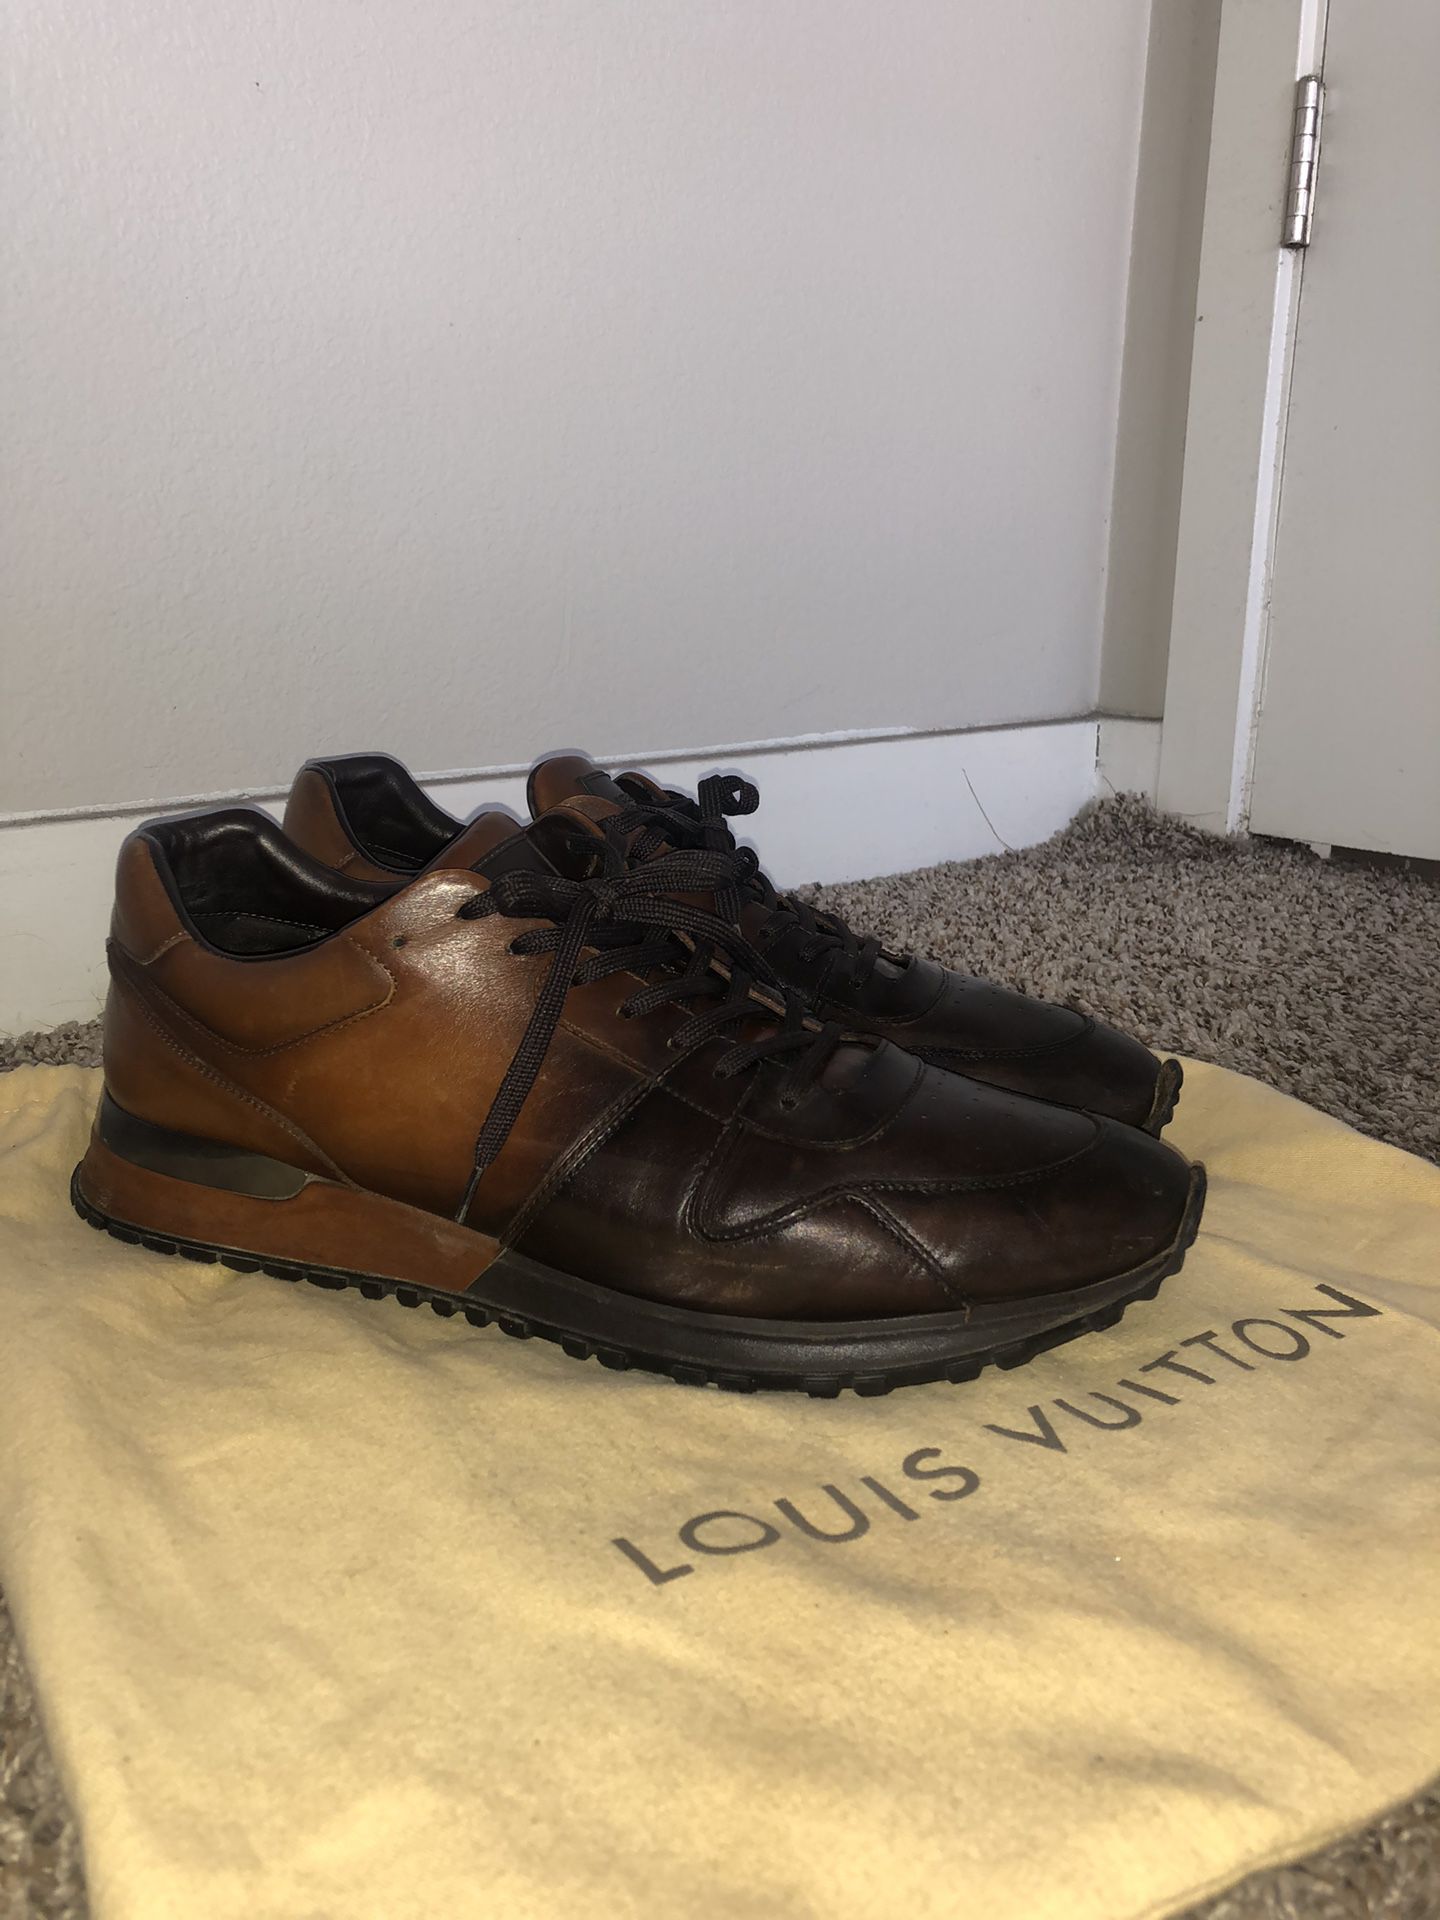 Louis vuitton men shoes 9.5 for Sale in Phoenix, AZ - OfferUp